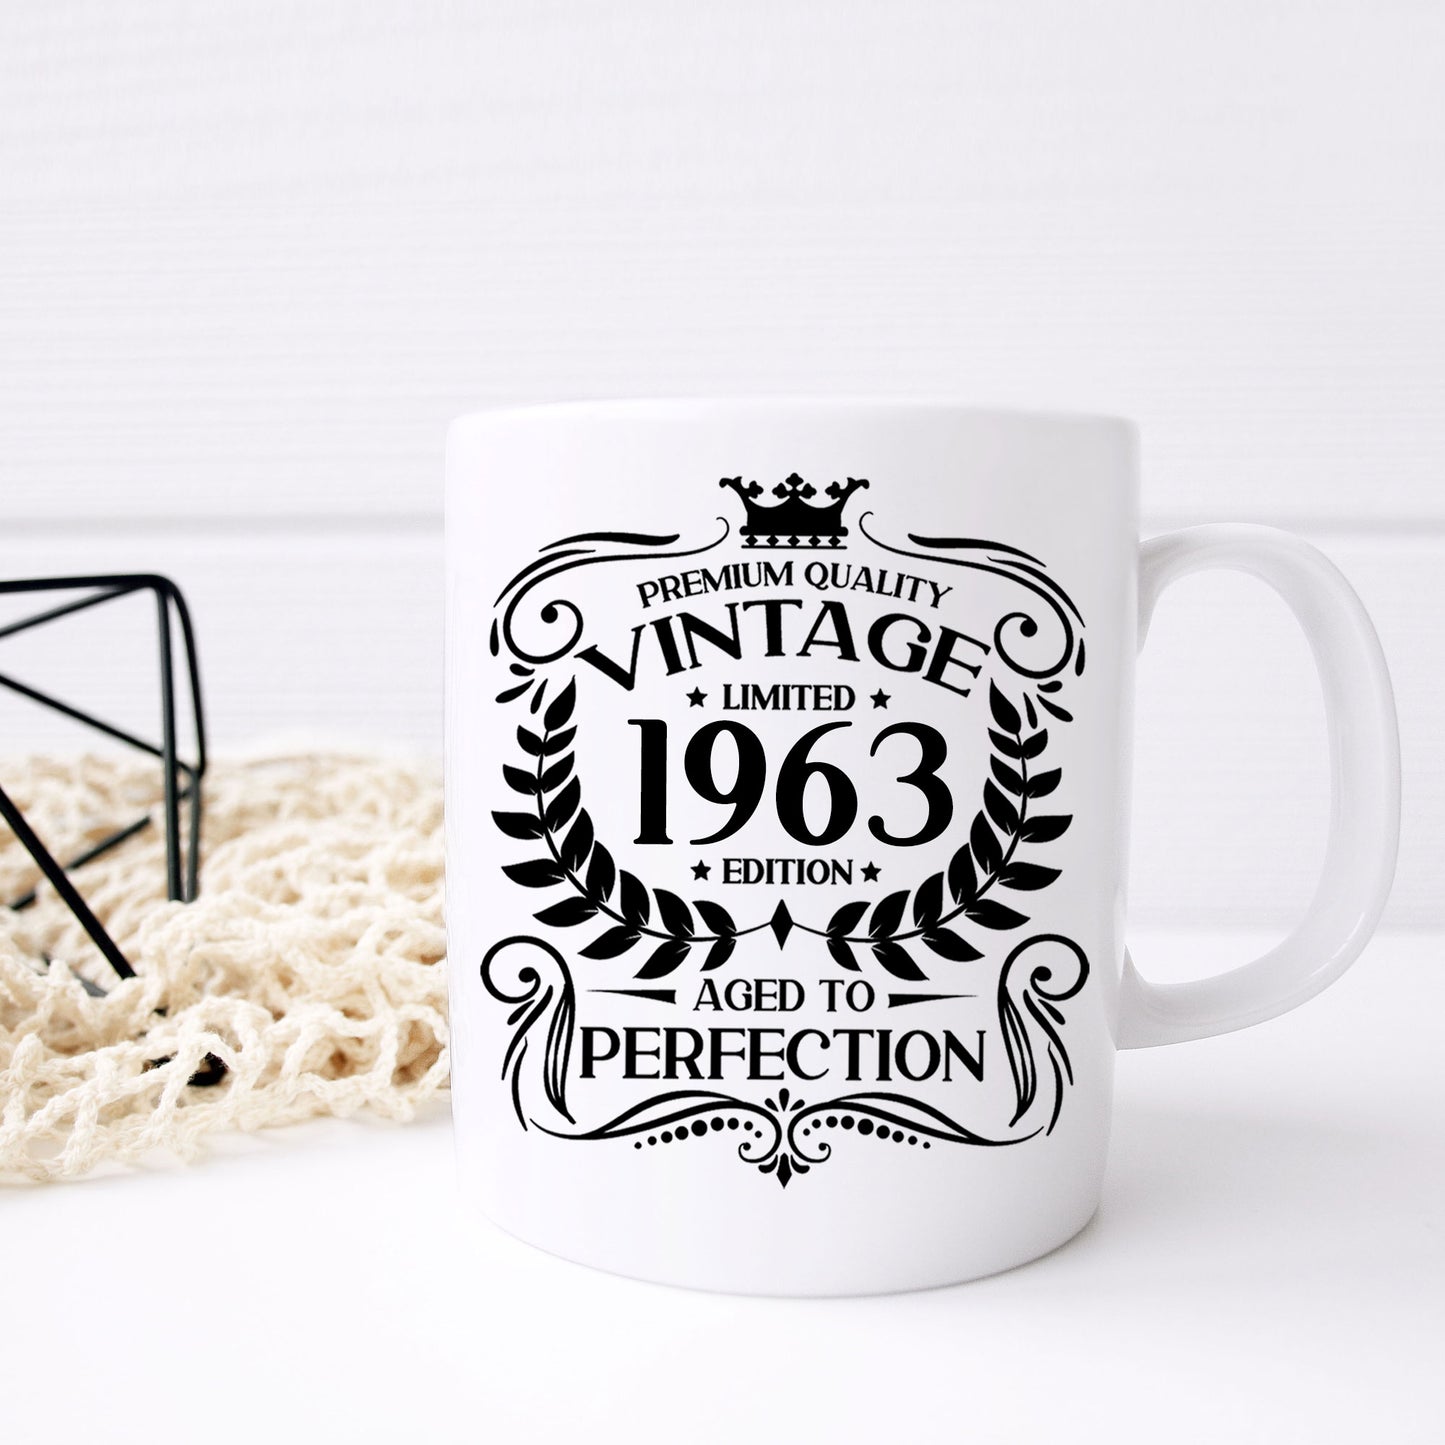 Personalised Vintage 1963 Mug and/or Coaster  - Always Looking Good -   